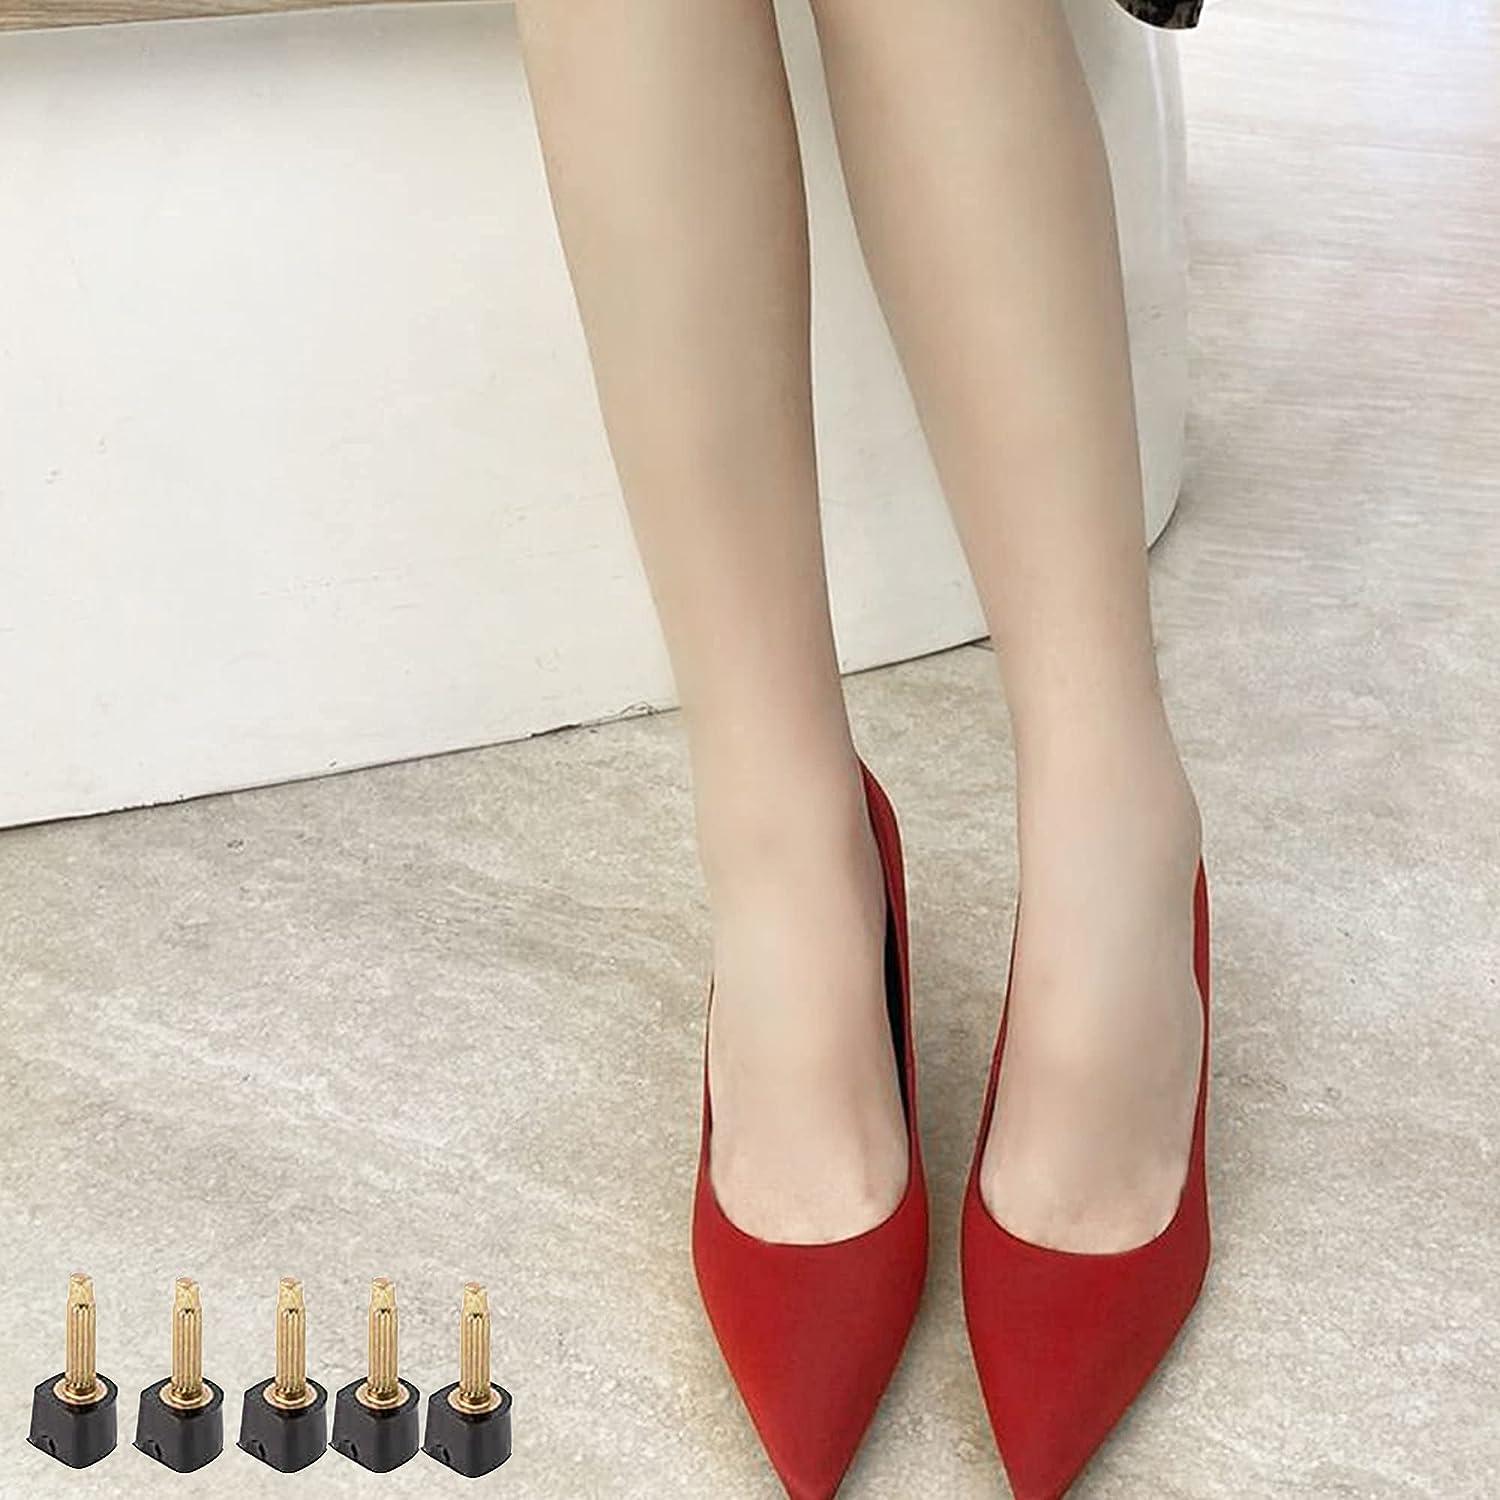 24 Pcs Heel Repair Kit Replacement Tap Shoe High Heels Womens | eBay